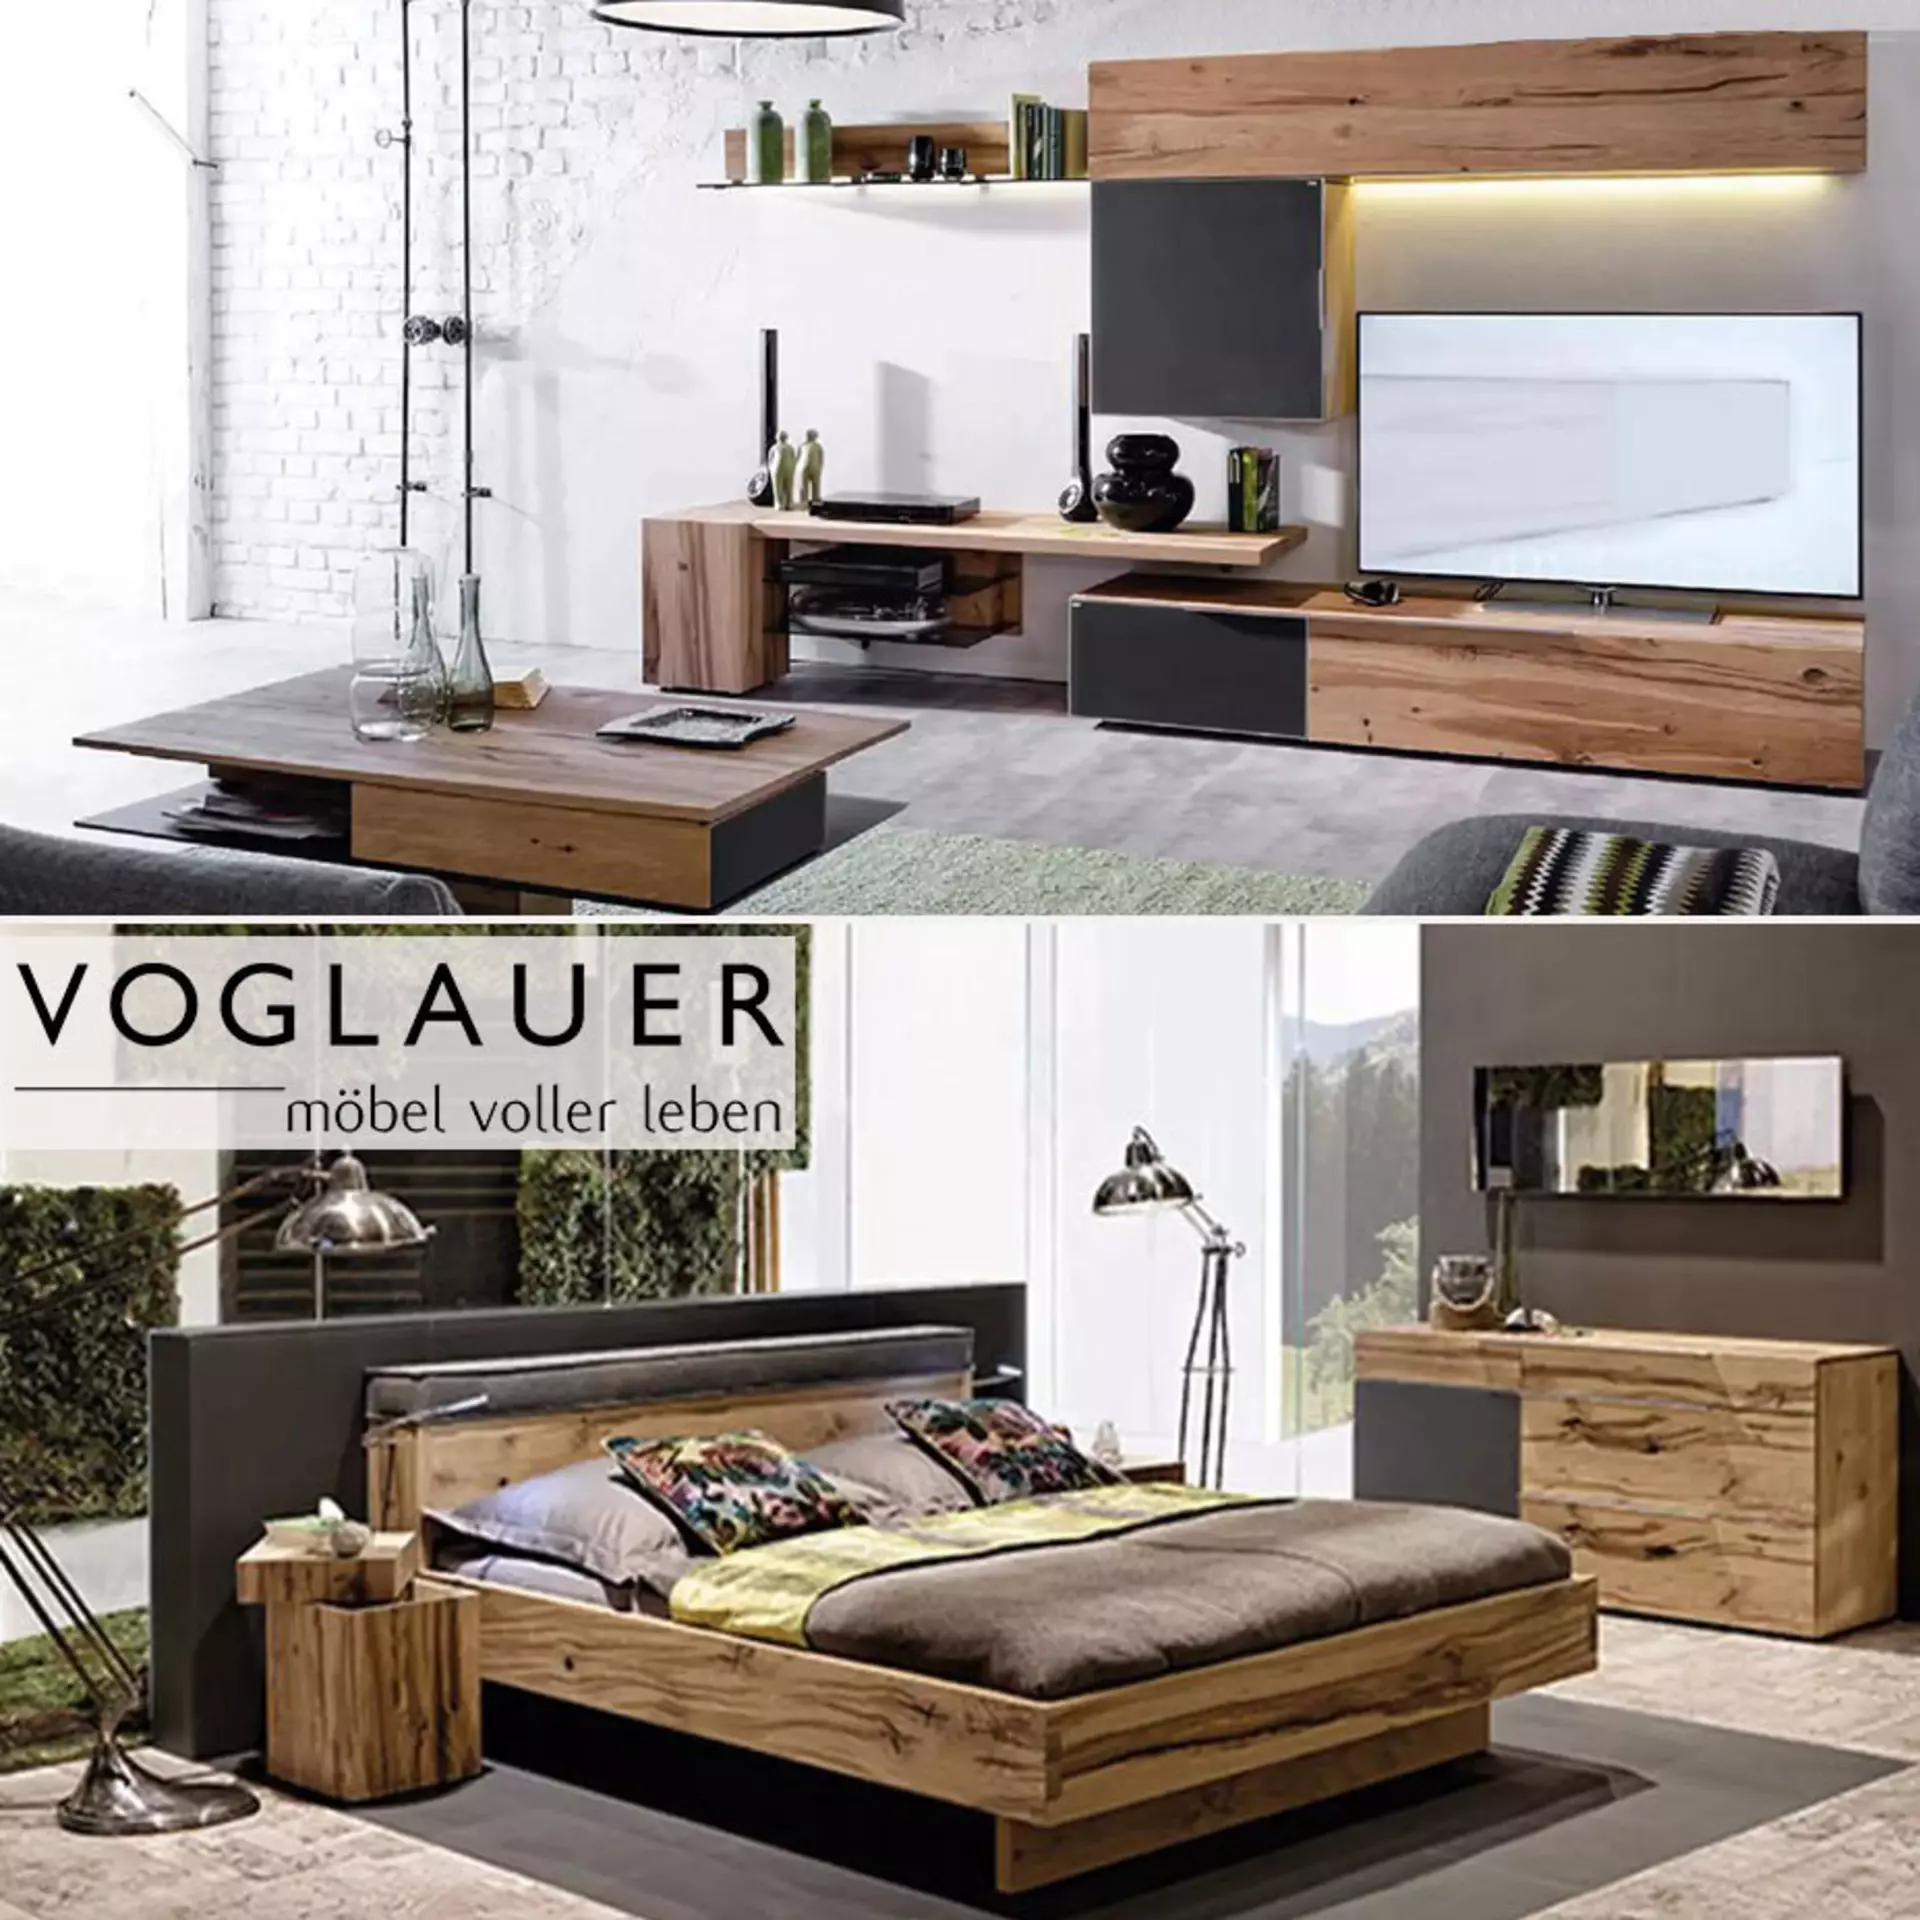 Voglauer - Die Premium-Marke für Designholzmöbel